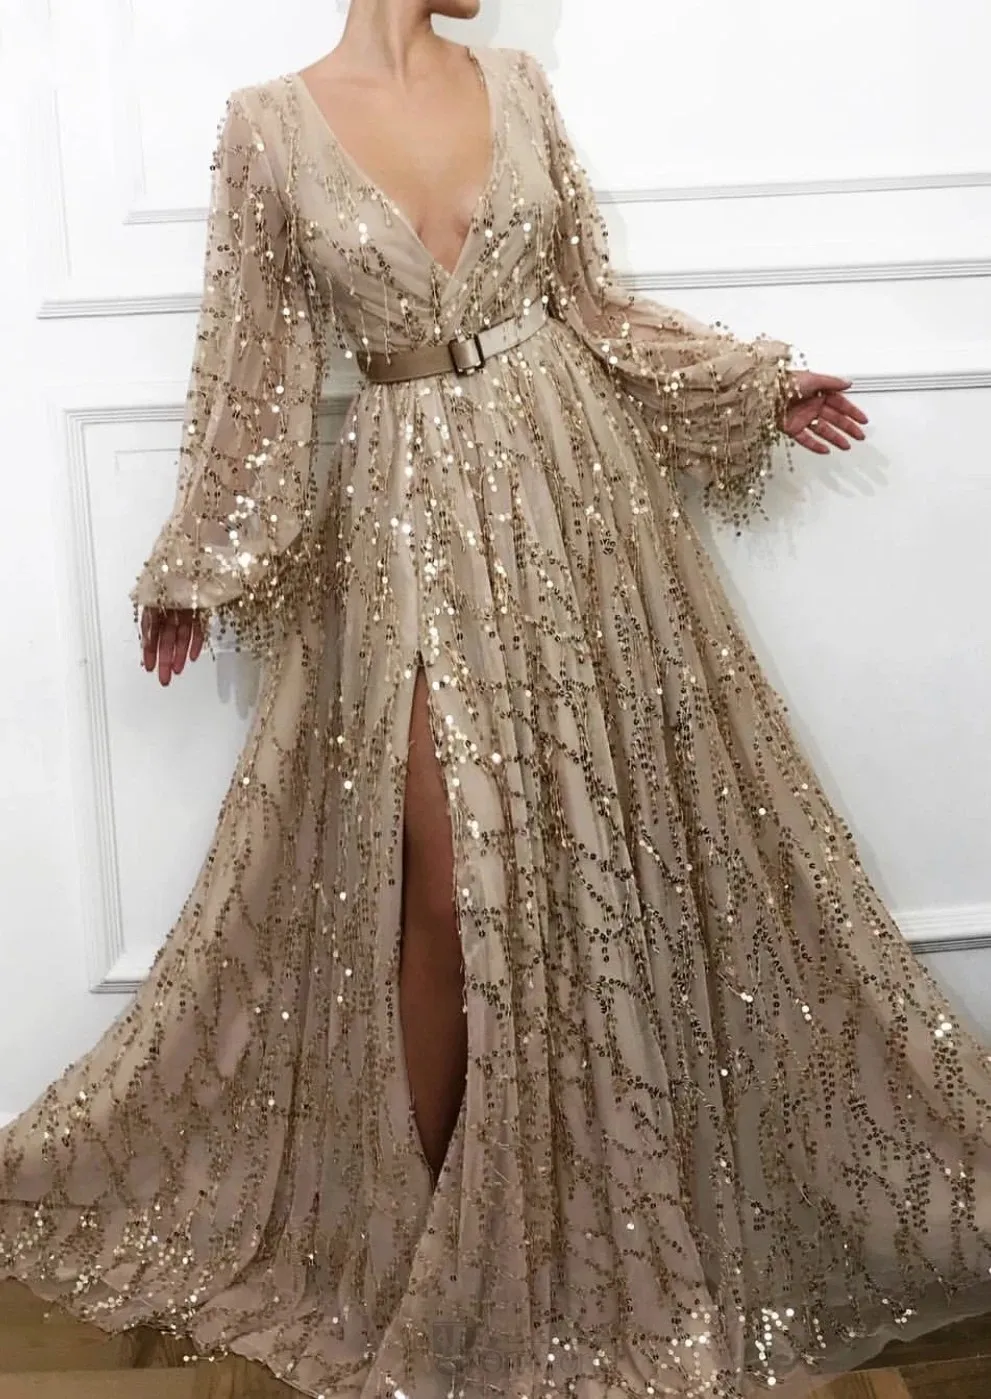 Seksi Yarık Altın Abiye derin v boyun 2020 Son Moda Pullarda Dantel Dubai Suudi Arapça Balo Abiye Uzun Kollu Örgün Parti Elbise